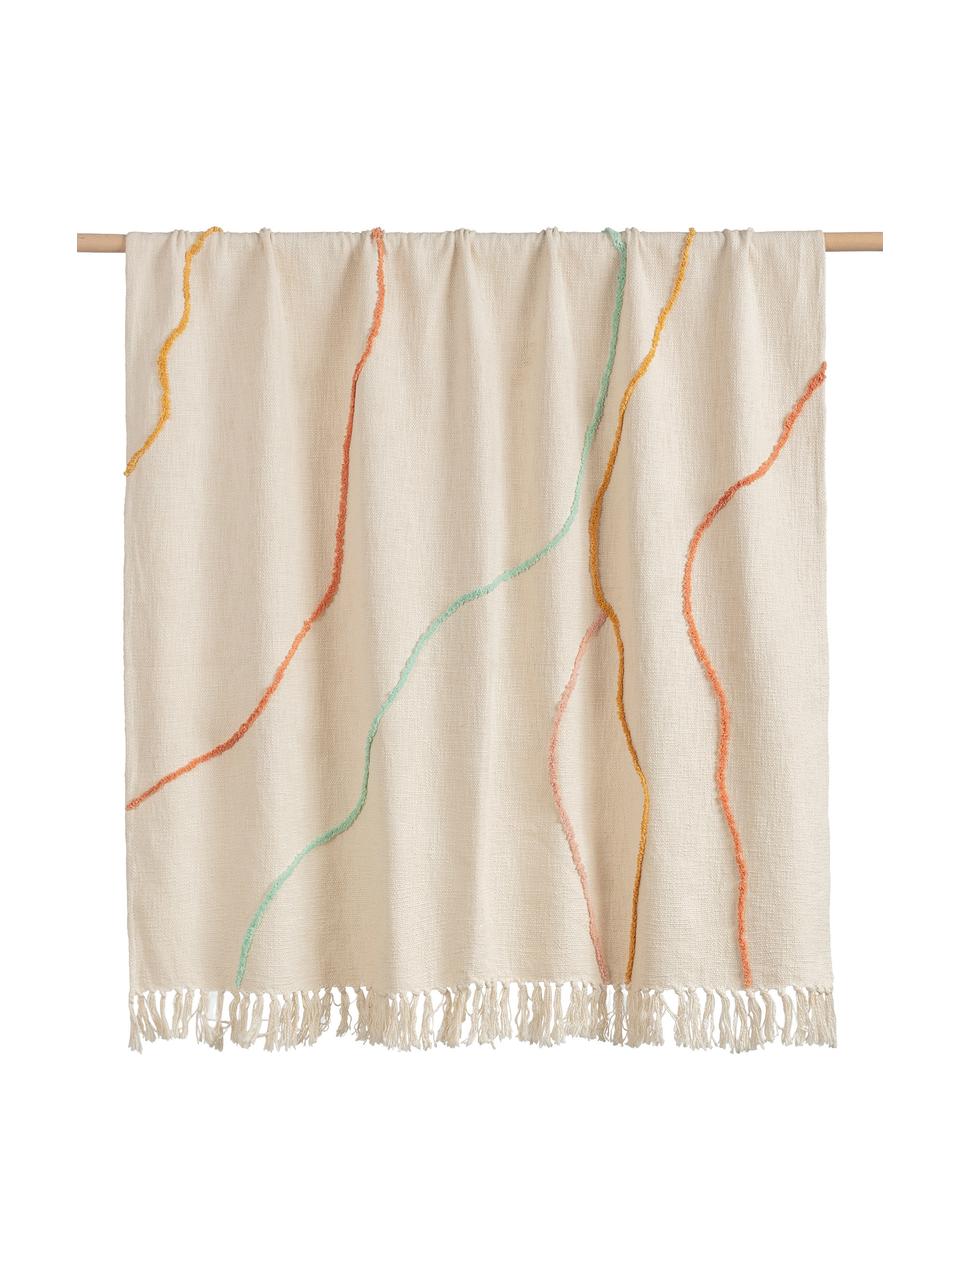 Baumwolldecke Malva mit bunten Linien und Fransen, 100% Baumwolle, Cremefarben, Mehrfarbig, 120 x 180 cm